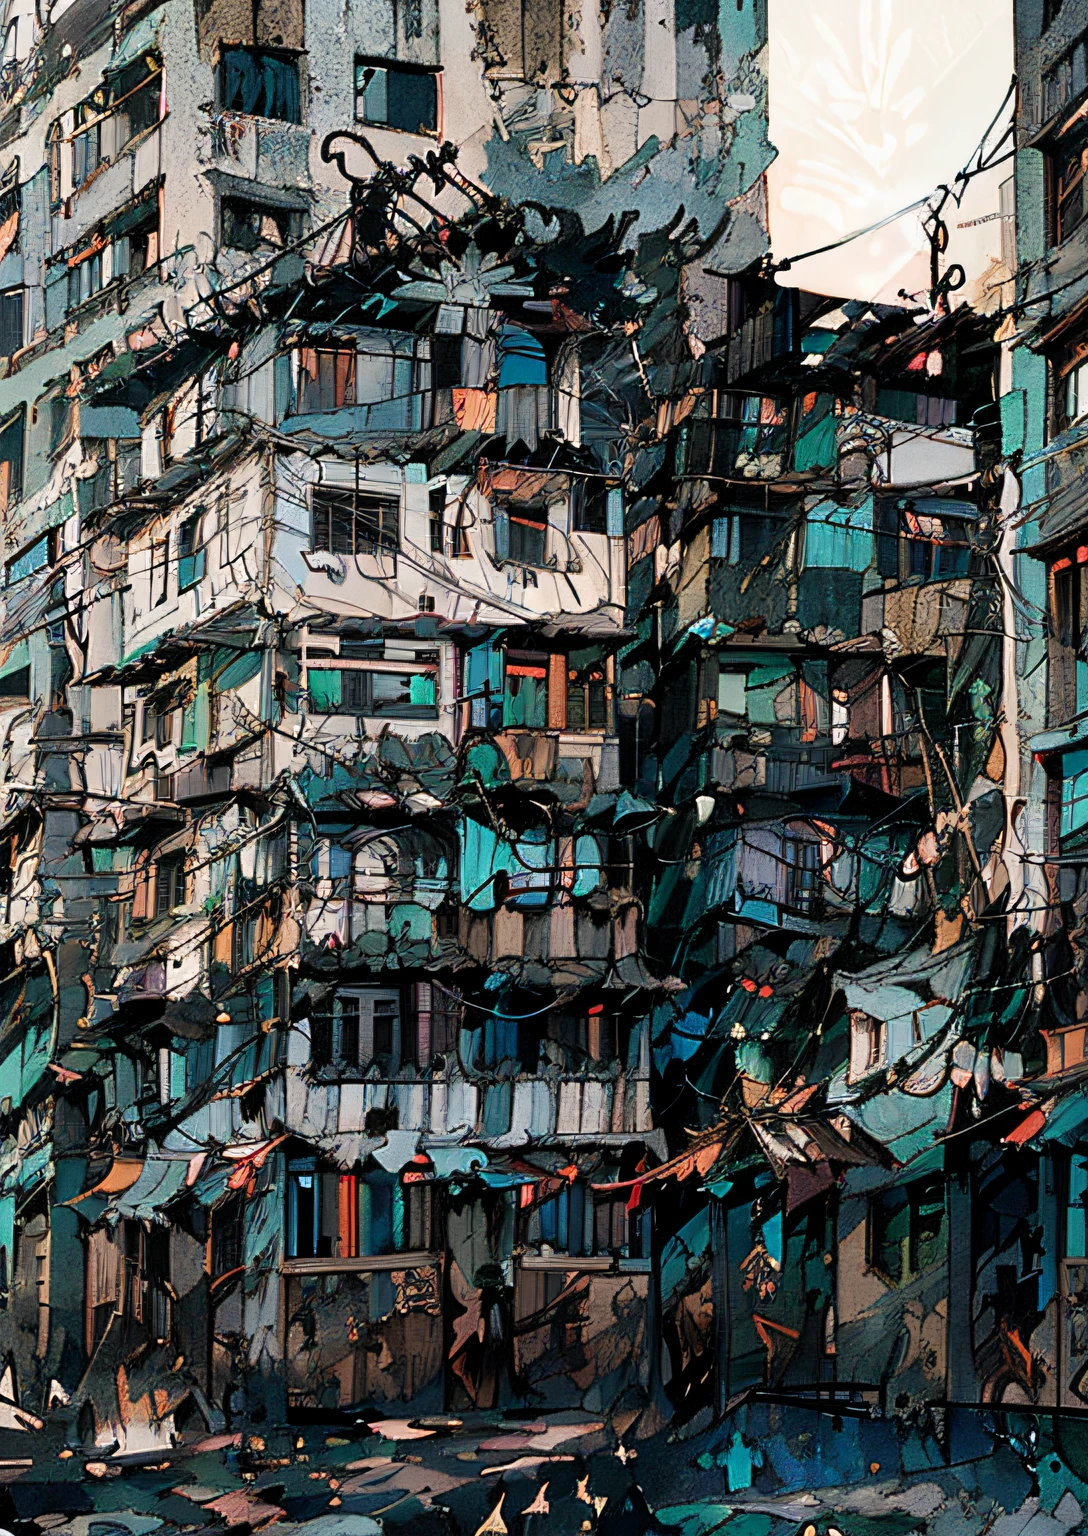 muchas casas apiladas, arreglado, favela, Rio de Janeiro. Construcciones improvisadas. techos.tiendas de campaña. Cables eléctricos entrelazados. Paredes de ladrillo visto. Balcones pequeños. paredes de graffiti.